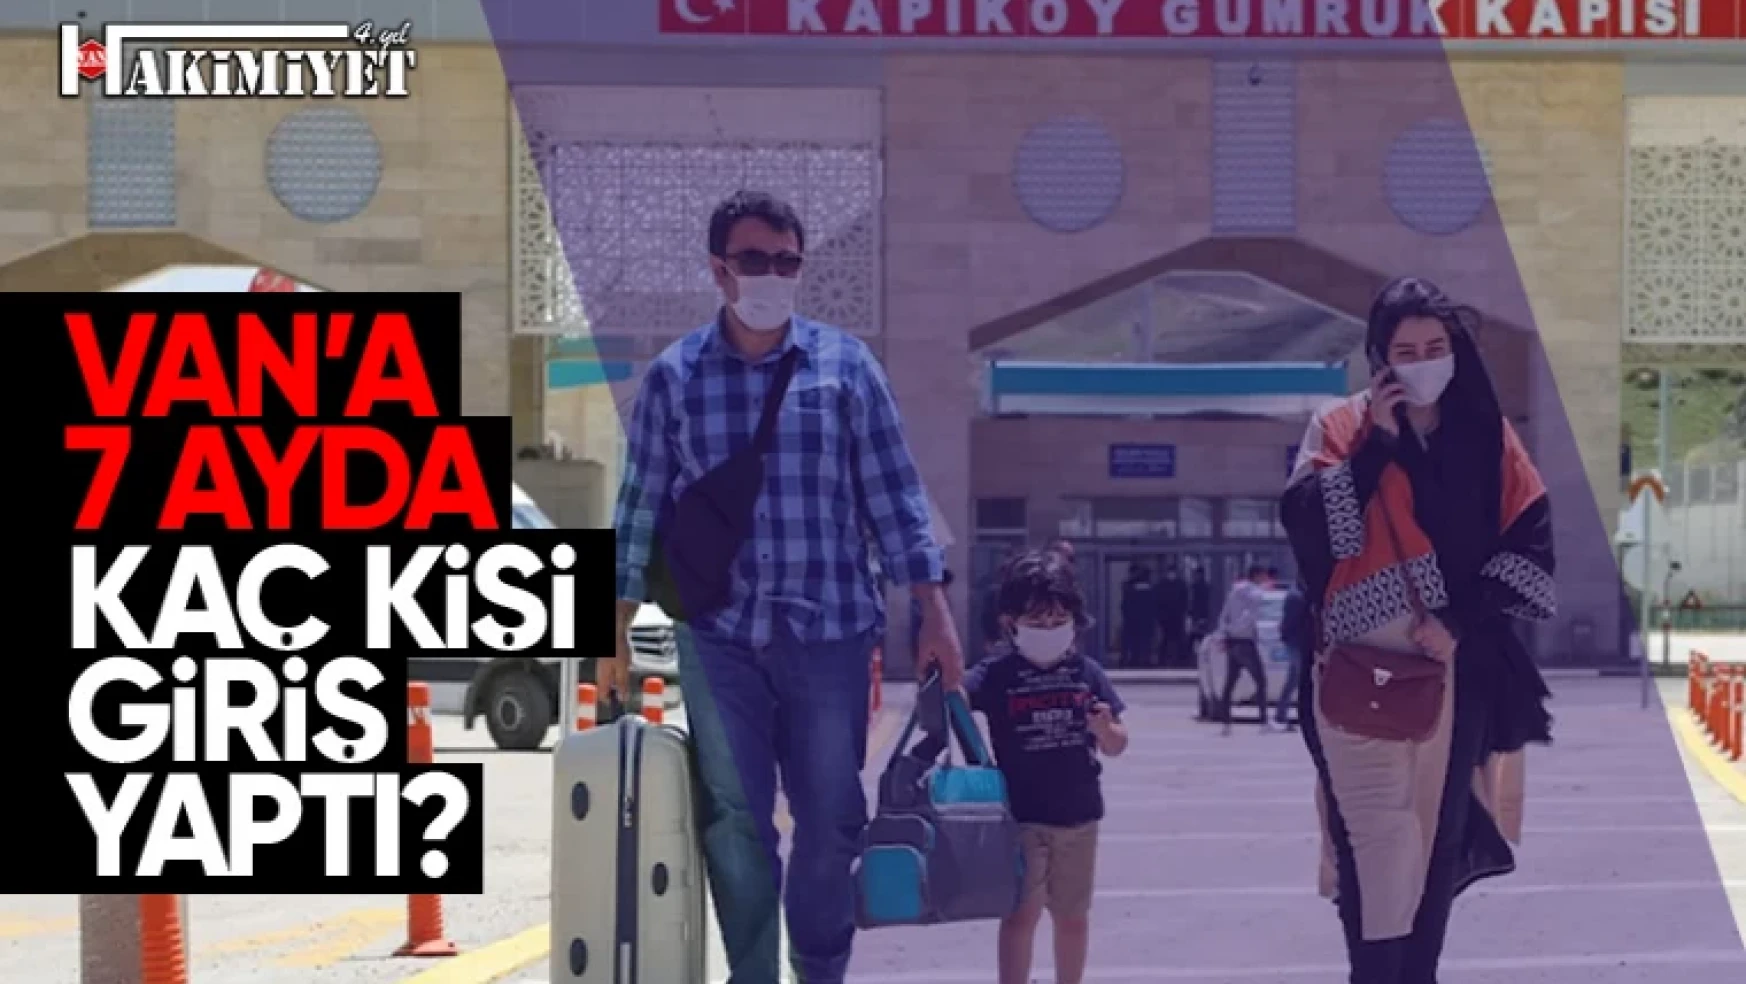 Van Kapıköy Sınır Kapısı'ndan 7 Ayda kaç kişi giriş yaptı?